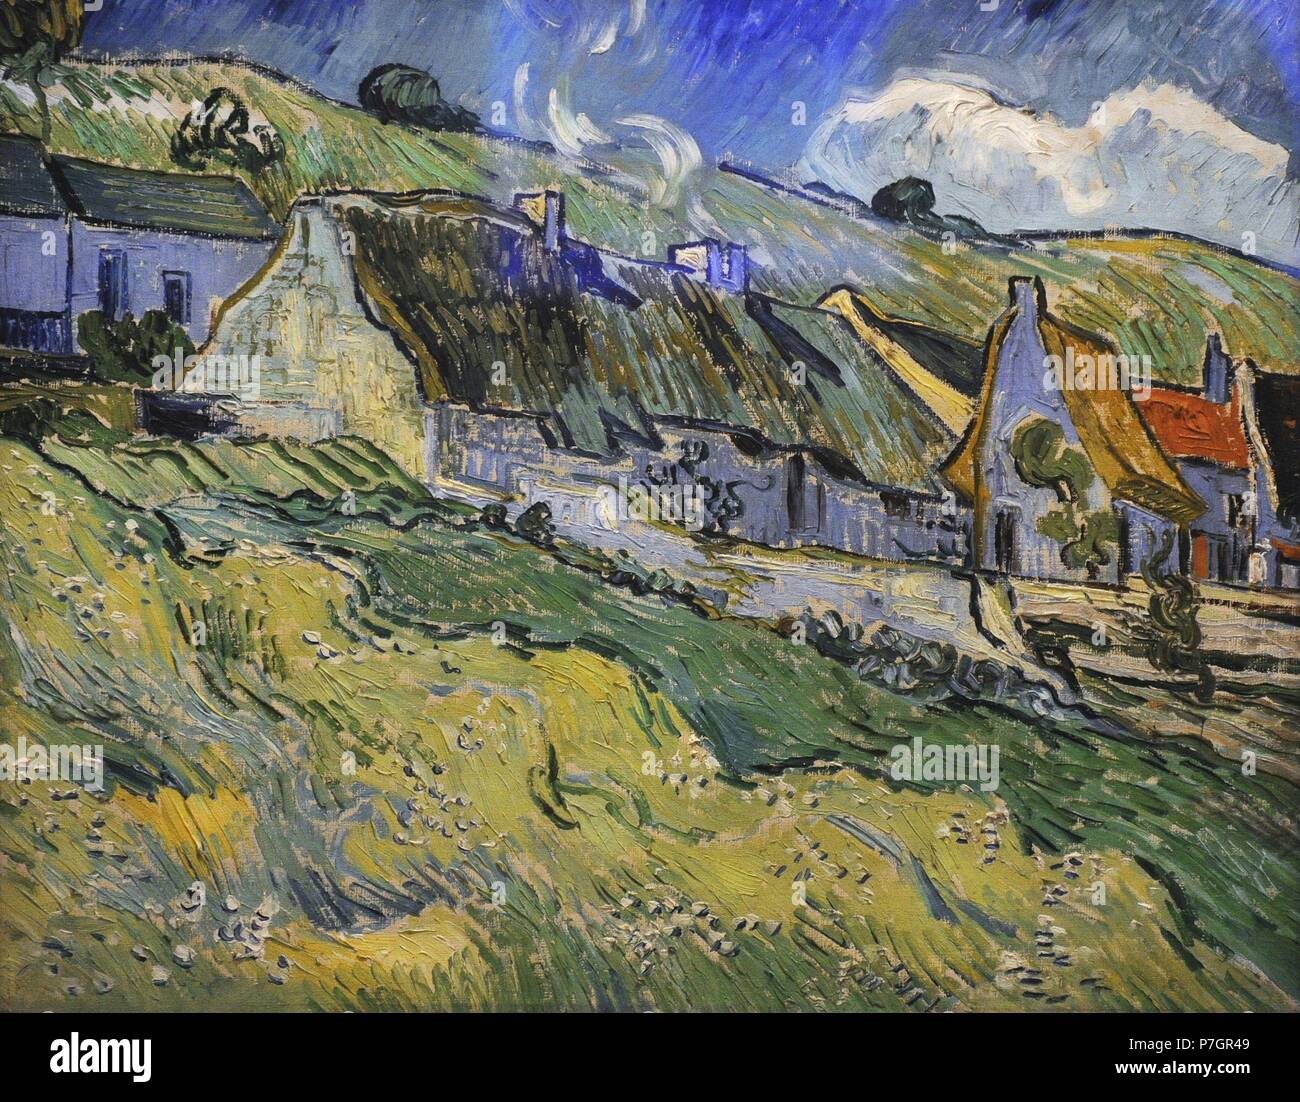 Vincent Van Gogh (1853-1890). Niederländische Post-Impressionisten Maler. Tatched Hütten und Häuser, 1890. Öl auf Leinwand. Die Eremitage. Sankt Petersburg. Russland. Stockfoto